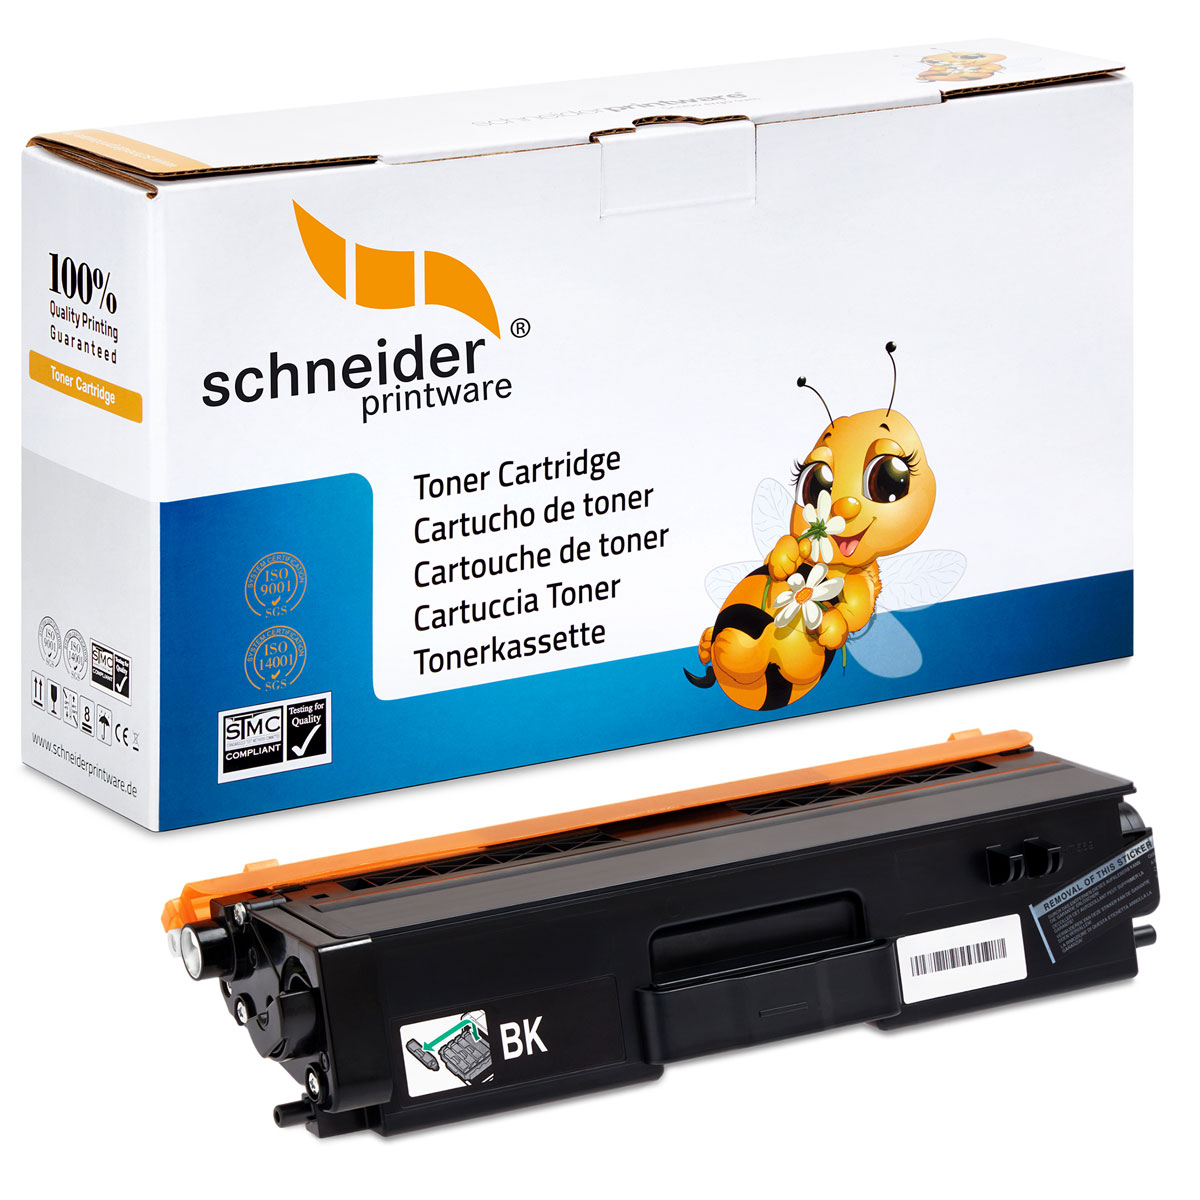 SCHNEIDERPRINTWARE Schneiderprintware BK Brothern Black ersetzt Toner TN-421 Toner (TN-421)